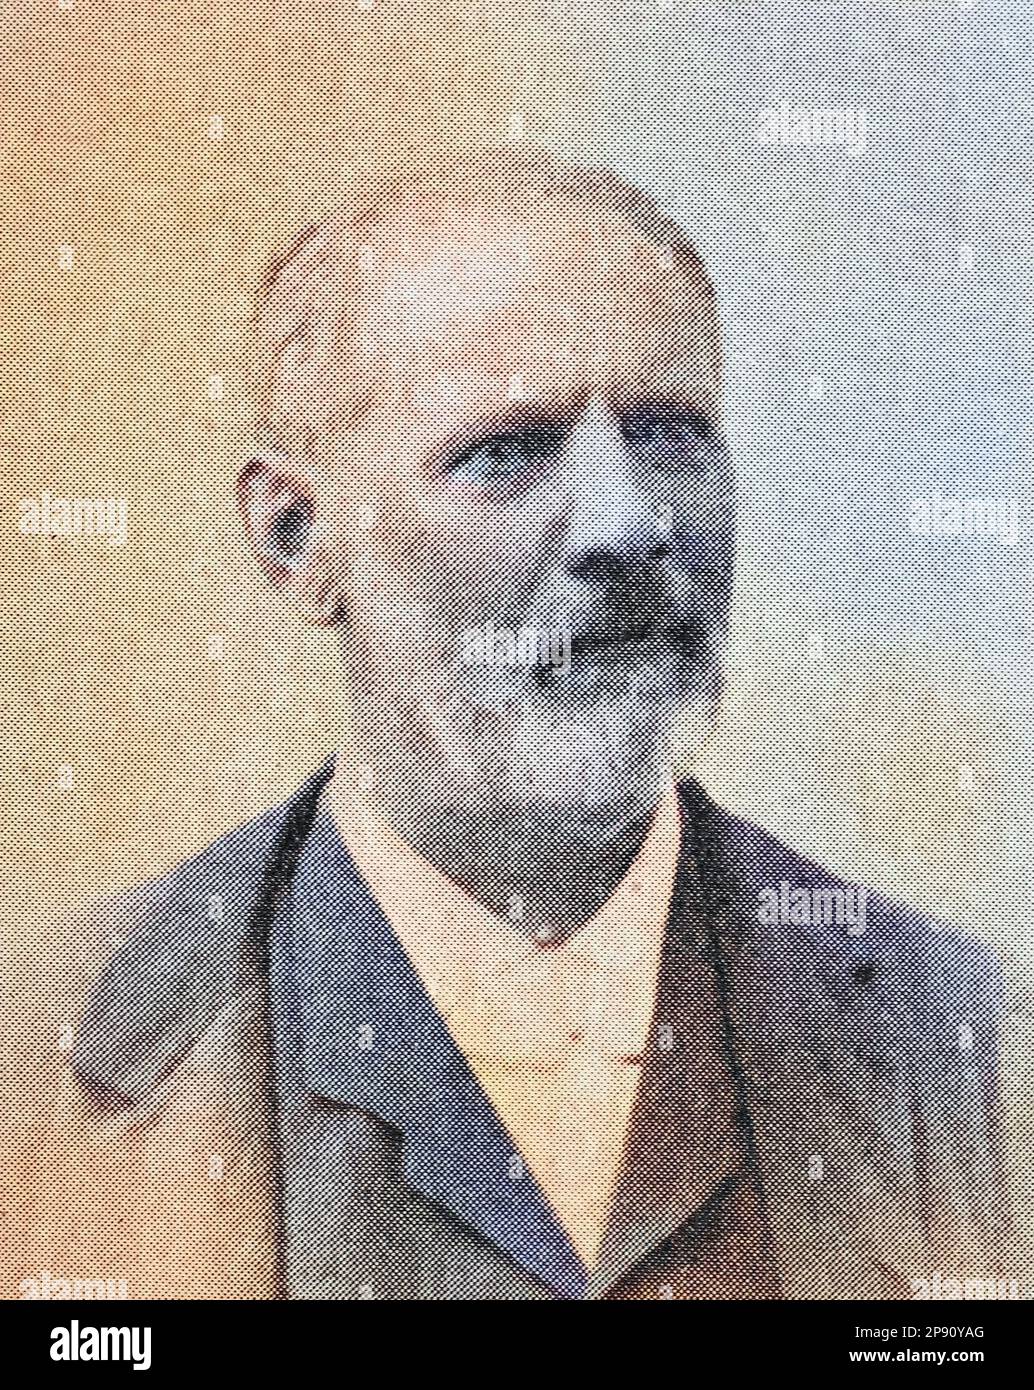 Theodor Sickel, seit 1884 Ritter von Sickel (18. Dezember 1826 - 21. April 1908) war ein deutsch-österreichischer Historiker und Diplomatiker, Historisch, digital restaurierte Reproduktion von einer Vorlage aus dem 19. Jahrhundert Stock Photo